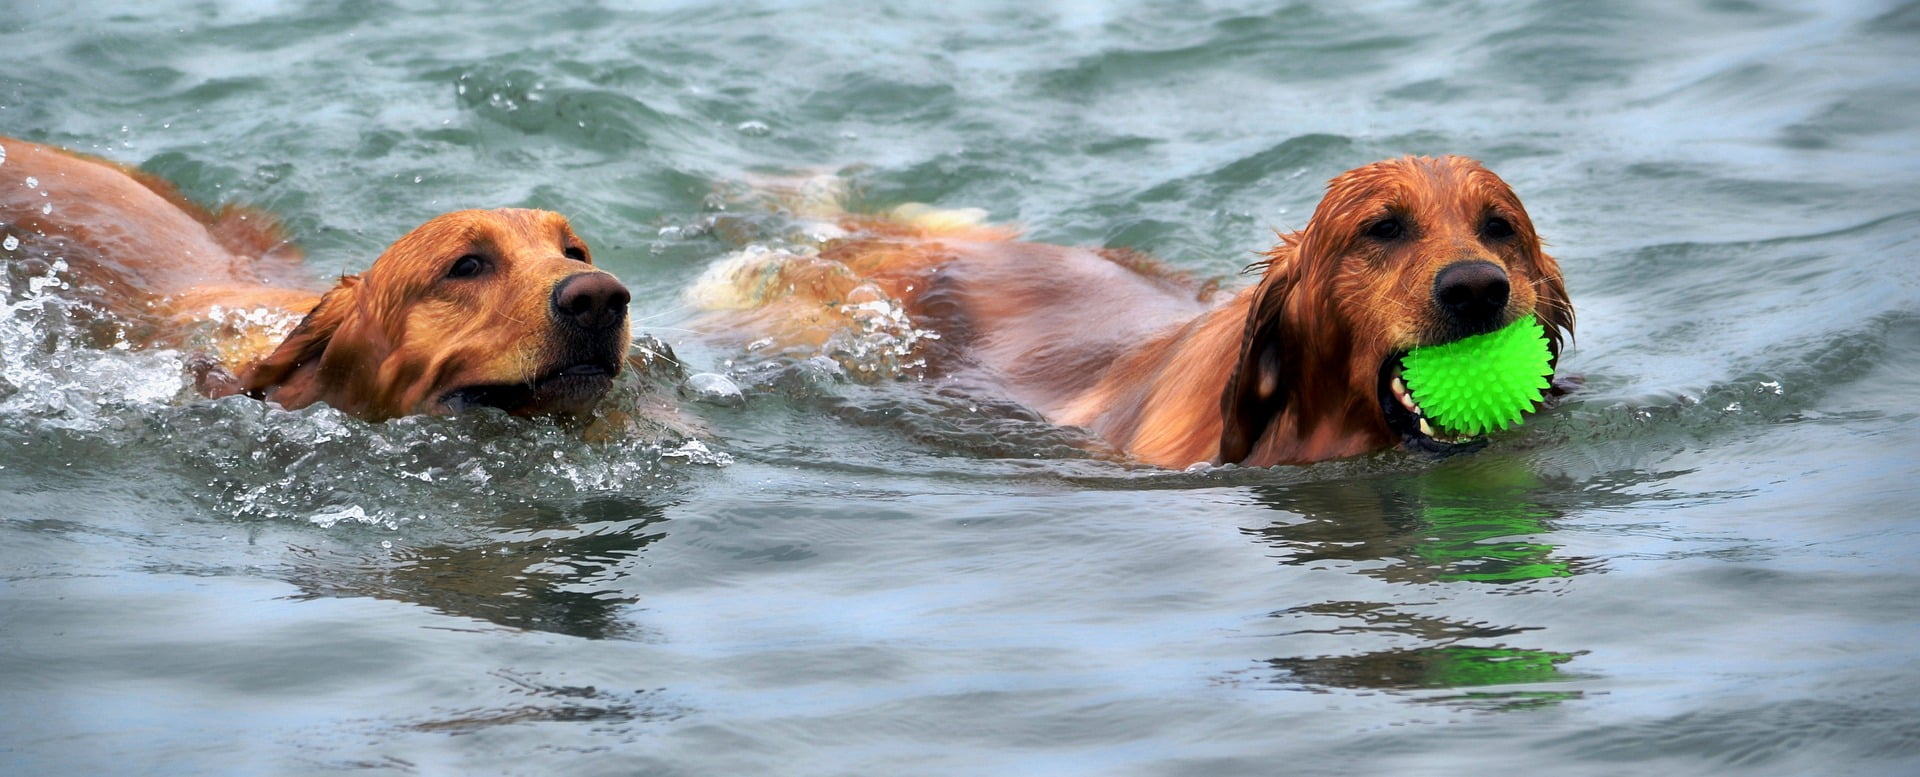 cachorros nadando